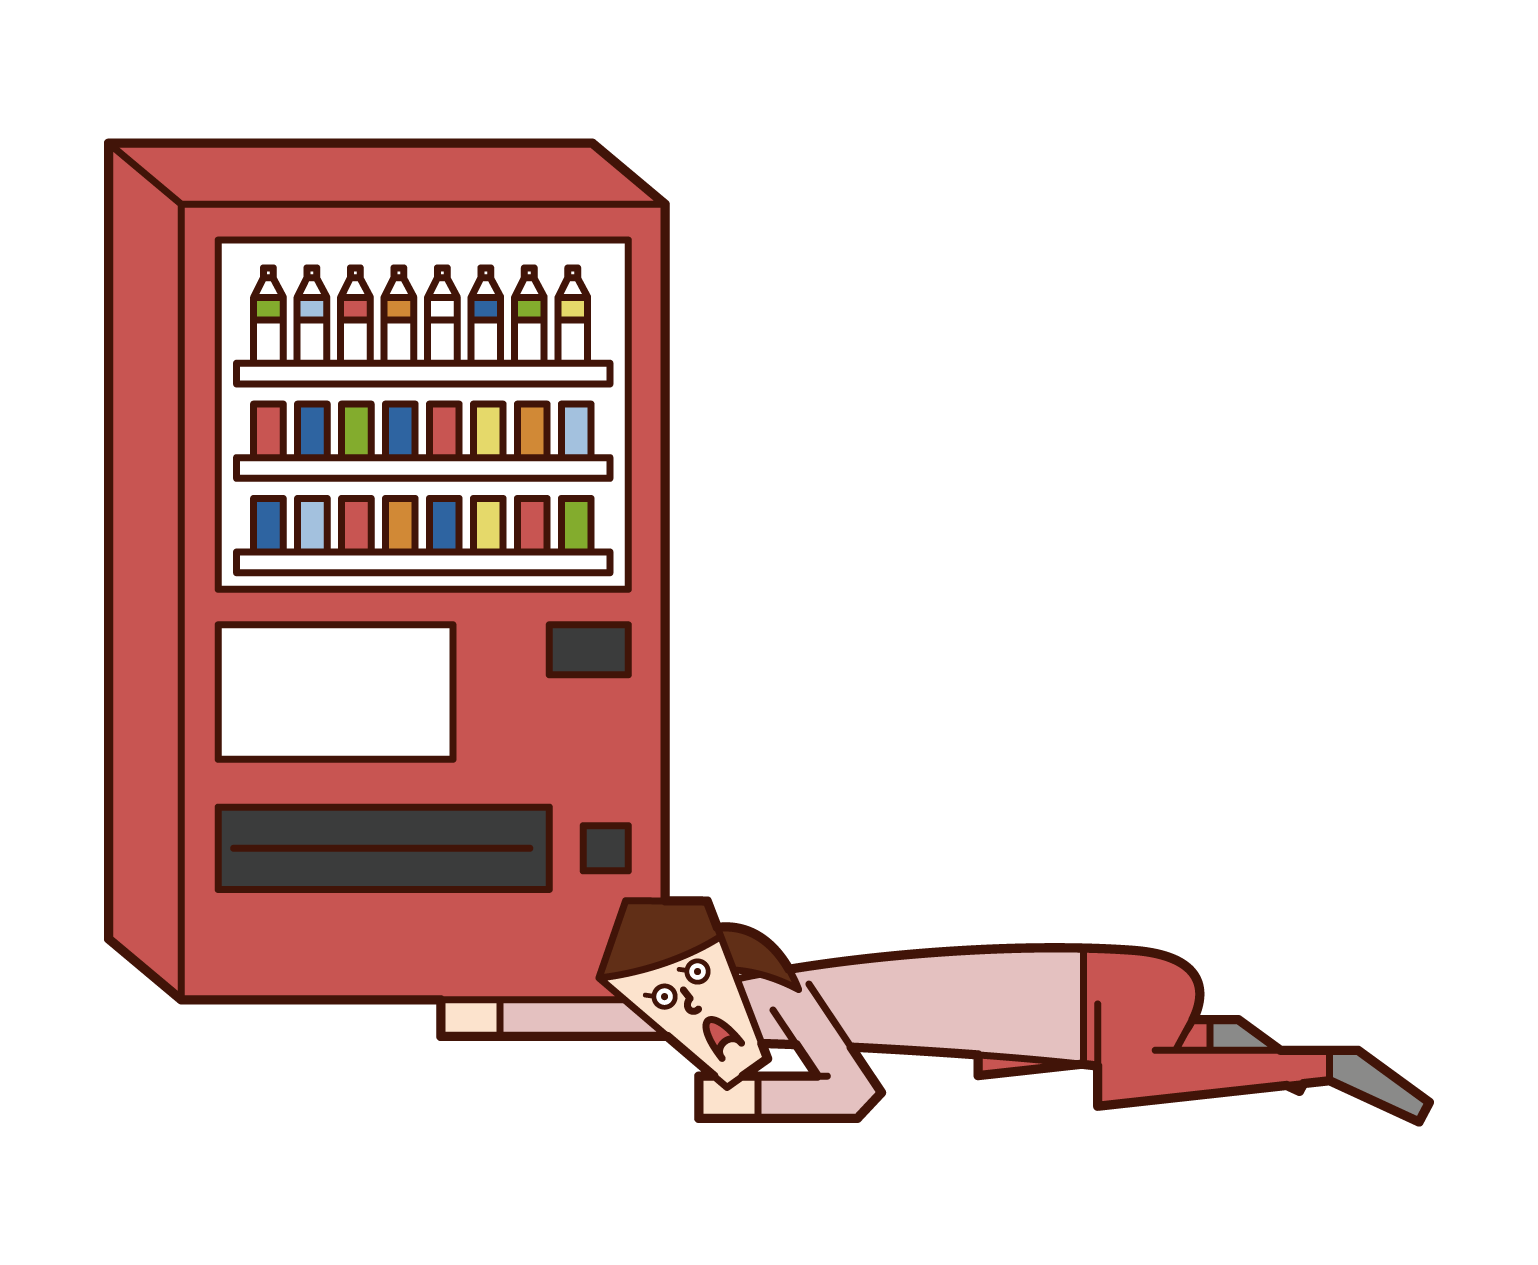 자동판매기에서 음료를 구입한 사람(남성)의 일러스트